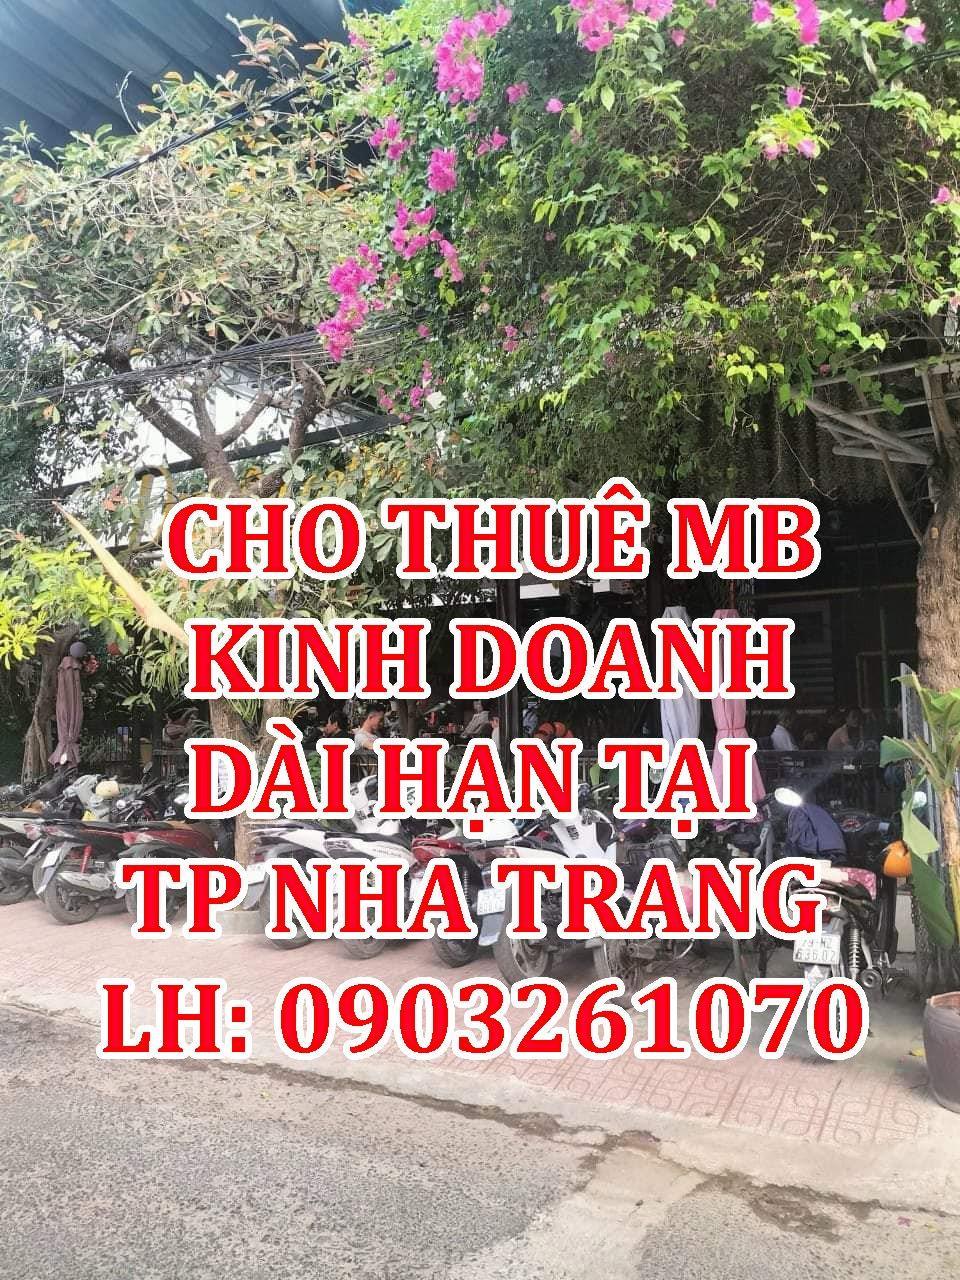 CHO THUÊ MB KINH DOANH DÀI HẠN tại thành phố Nha Trang.1195365